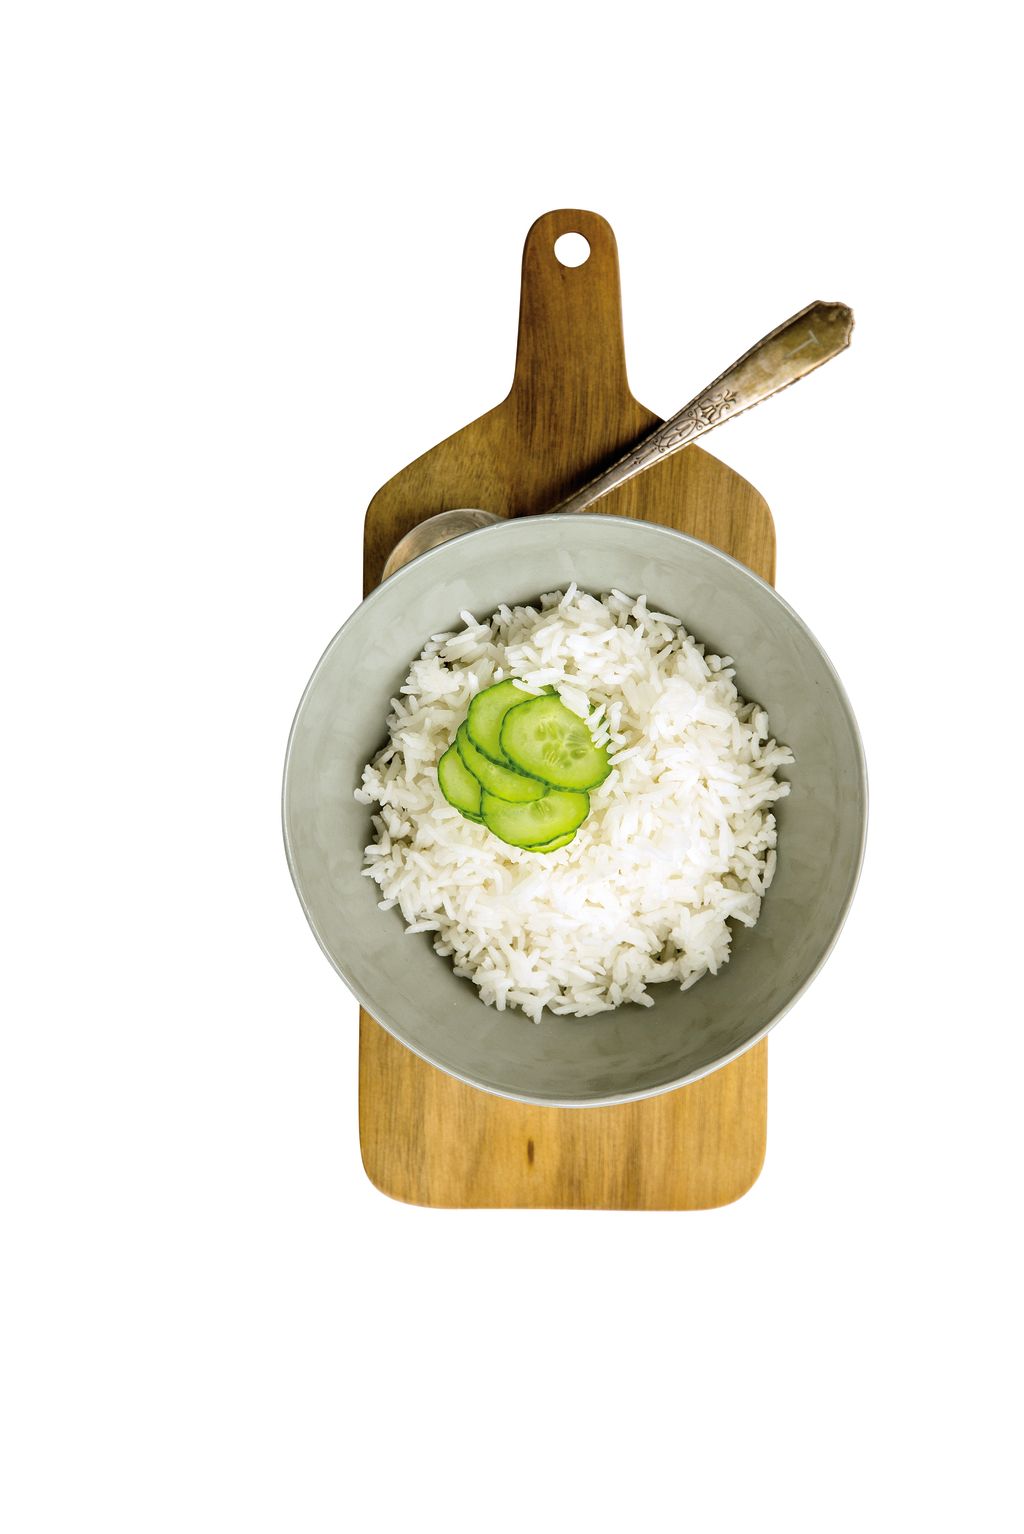 Steamed rice, Dishware, Rice, Jasmine rice, White rice, Recipe, Hand tool, Kitchen utensil, Tool, Staple food, 